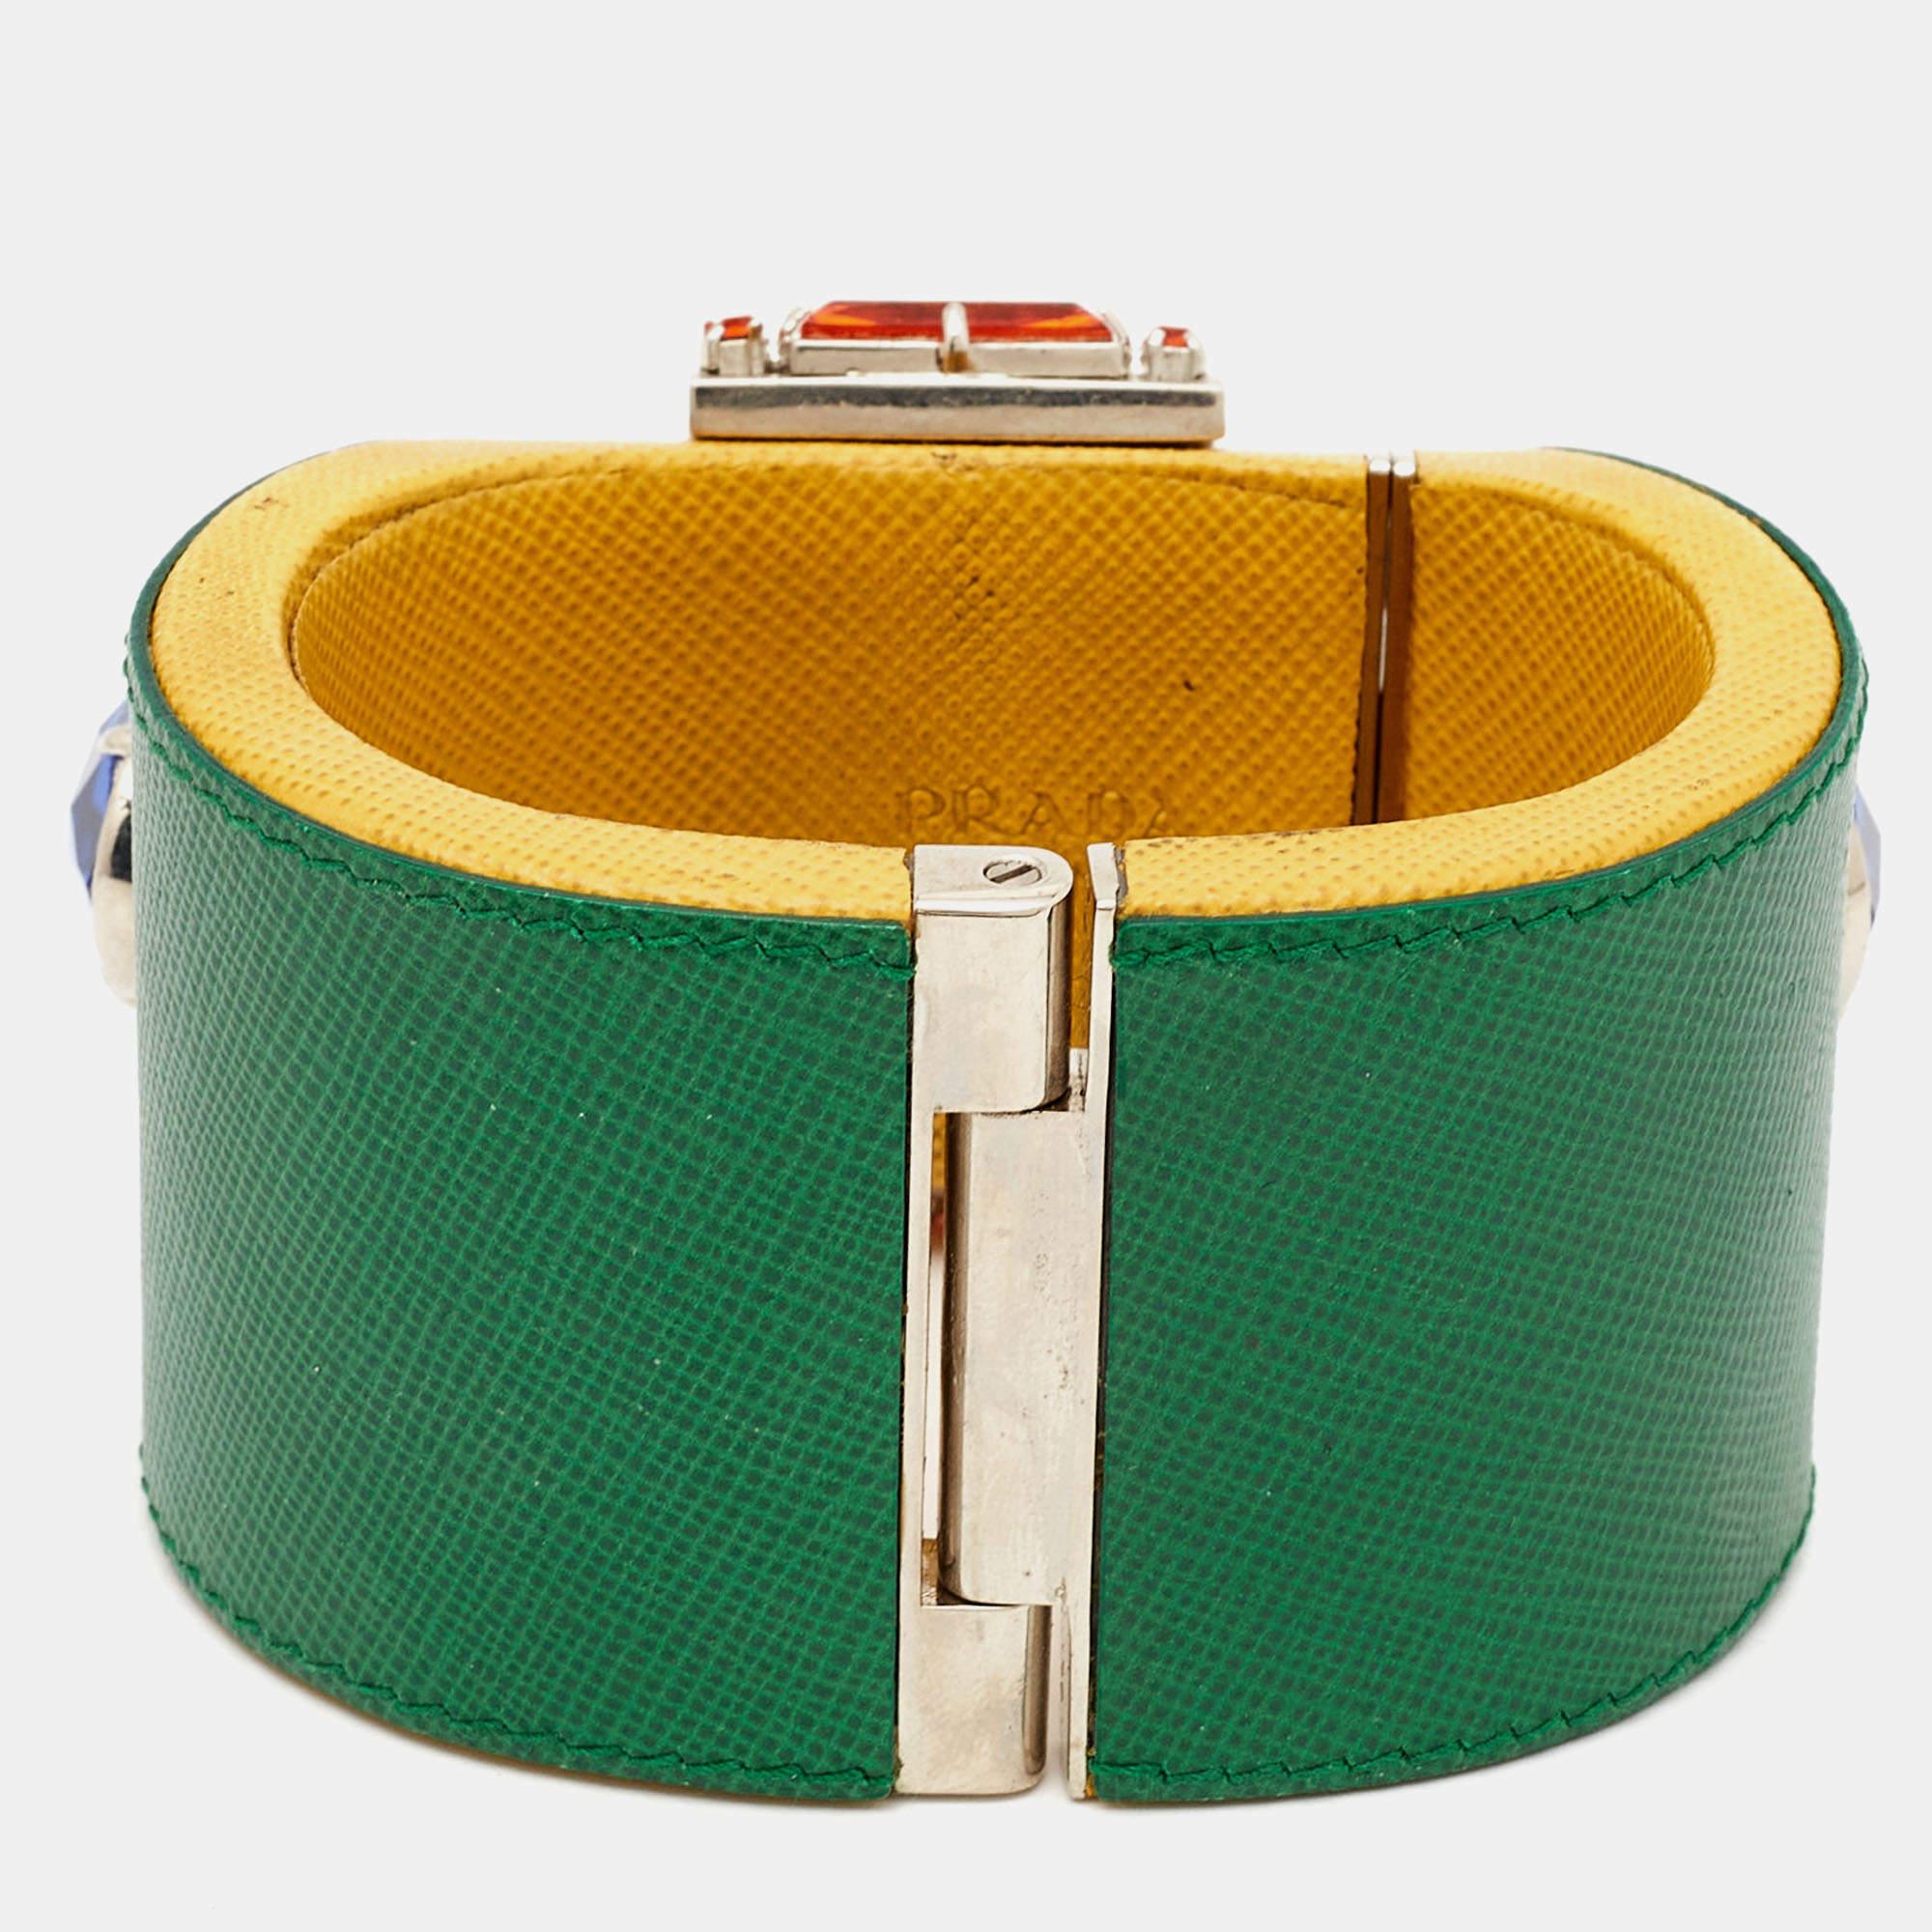 Réalisé avec une attention méticuleuse aux détails, le bracelet Prada exsude un luxe raffiné. Le cuir souple, orné de cristaux scintillants, est élégamment complété par la quincaillerie épurée de couleur argentée. Cet accessoire allie